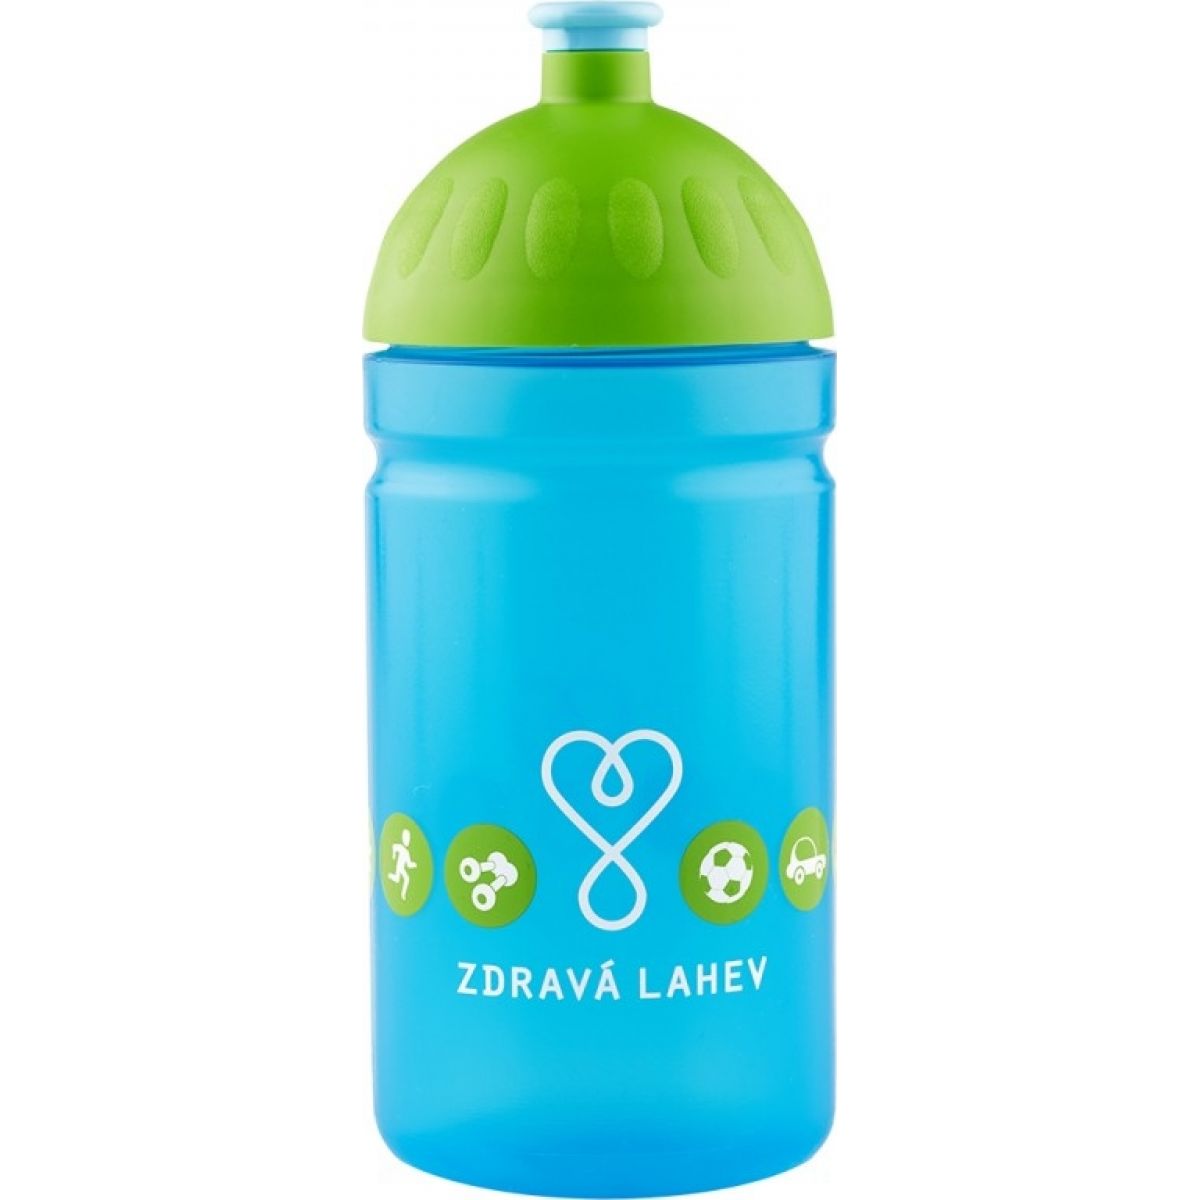 Zdravá lahev Logo 2014 0,5l